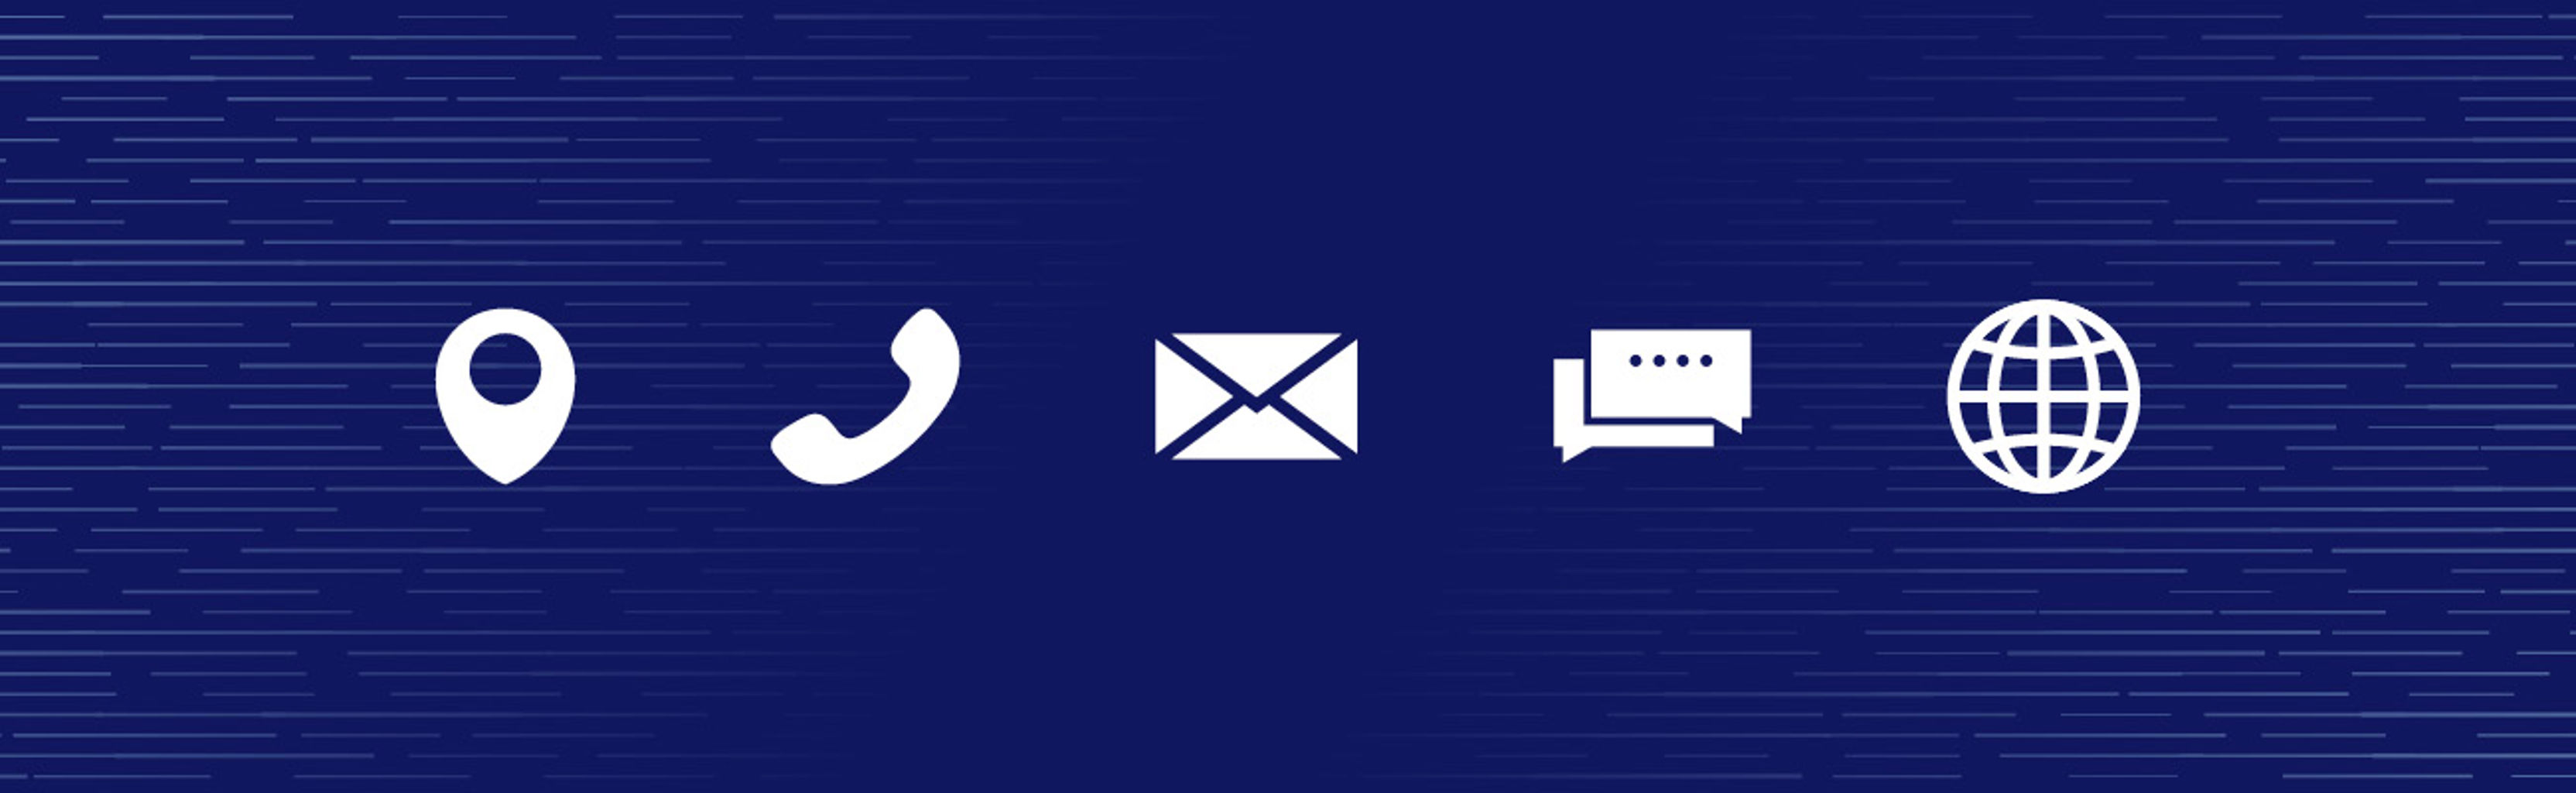 Communication icons on blue